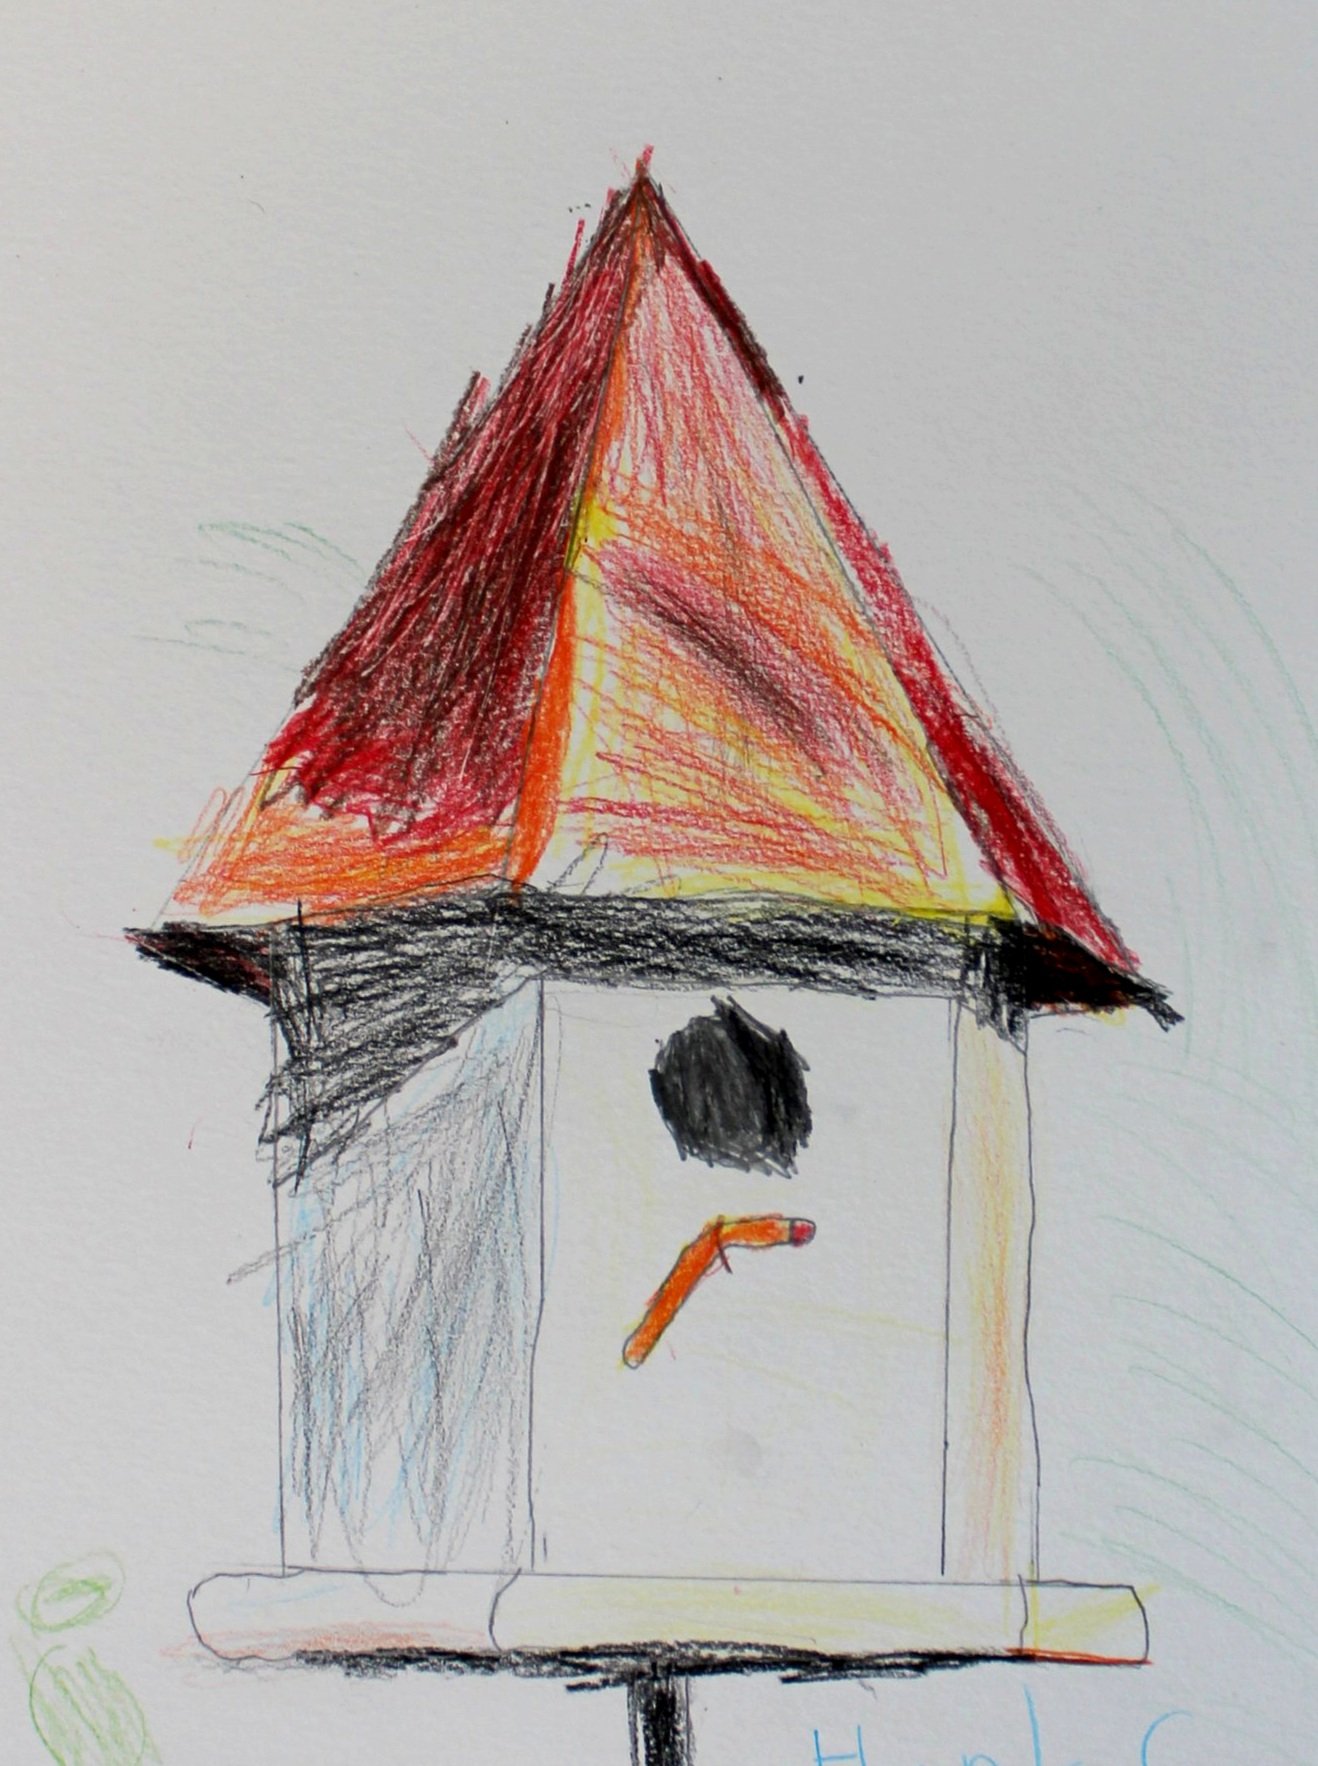 H.G., age 5, colored pencil